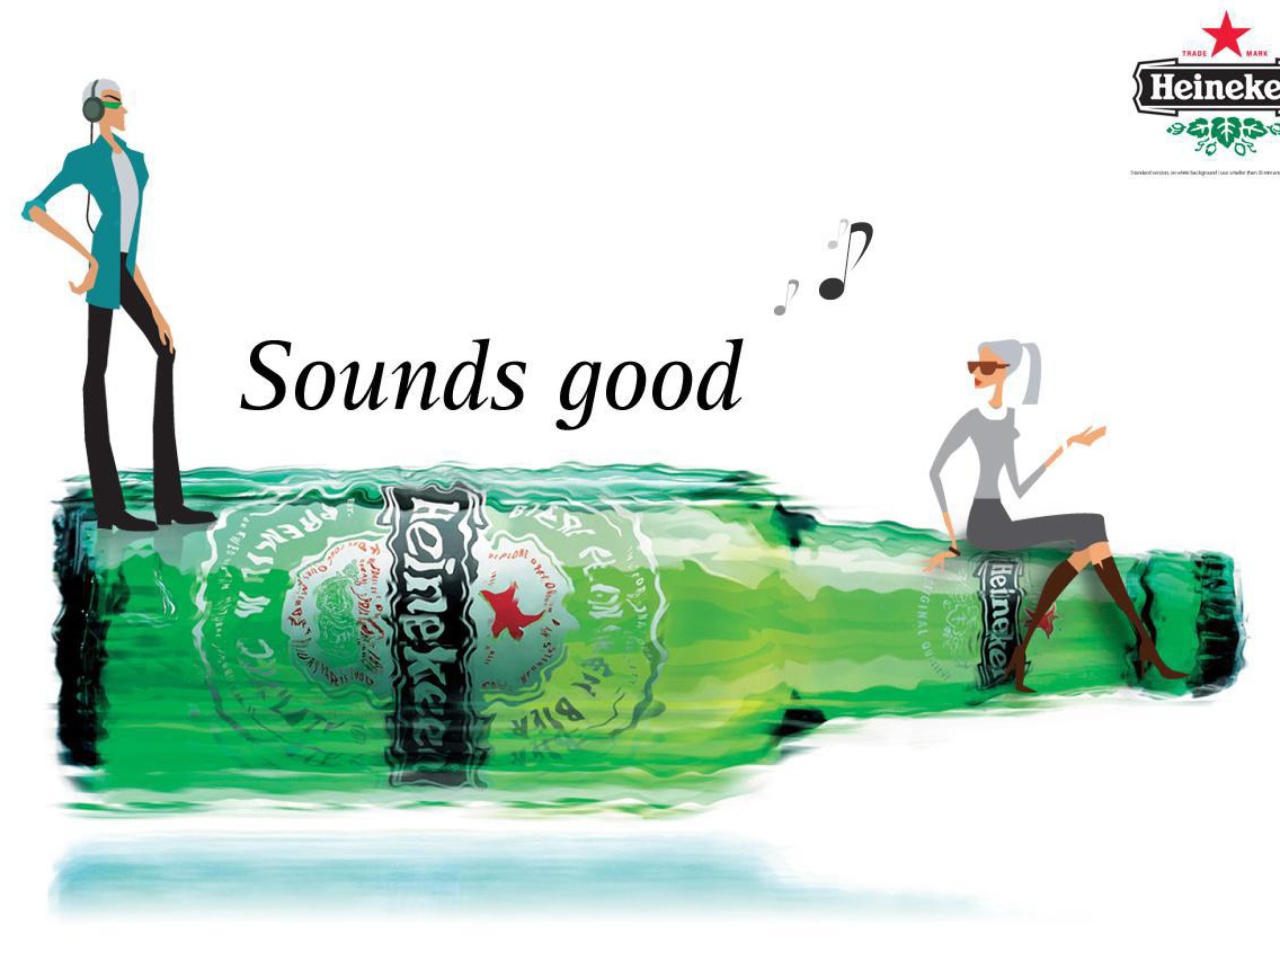 Sfondi Heineken, Sounds good 1280x960